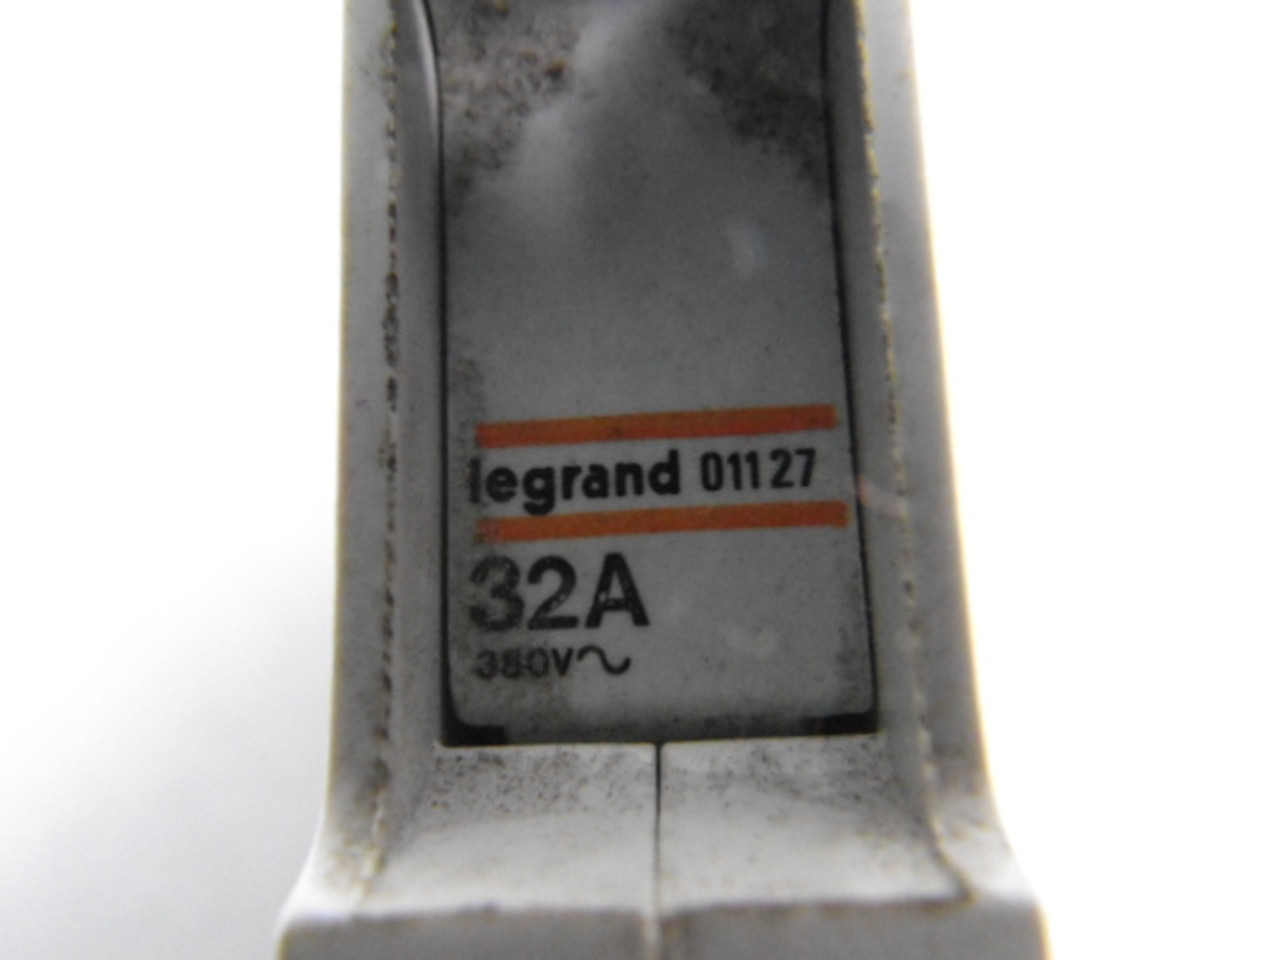 Legrand 01127 Fuse Holder 32A 380V AC 1-Pole USED